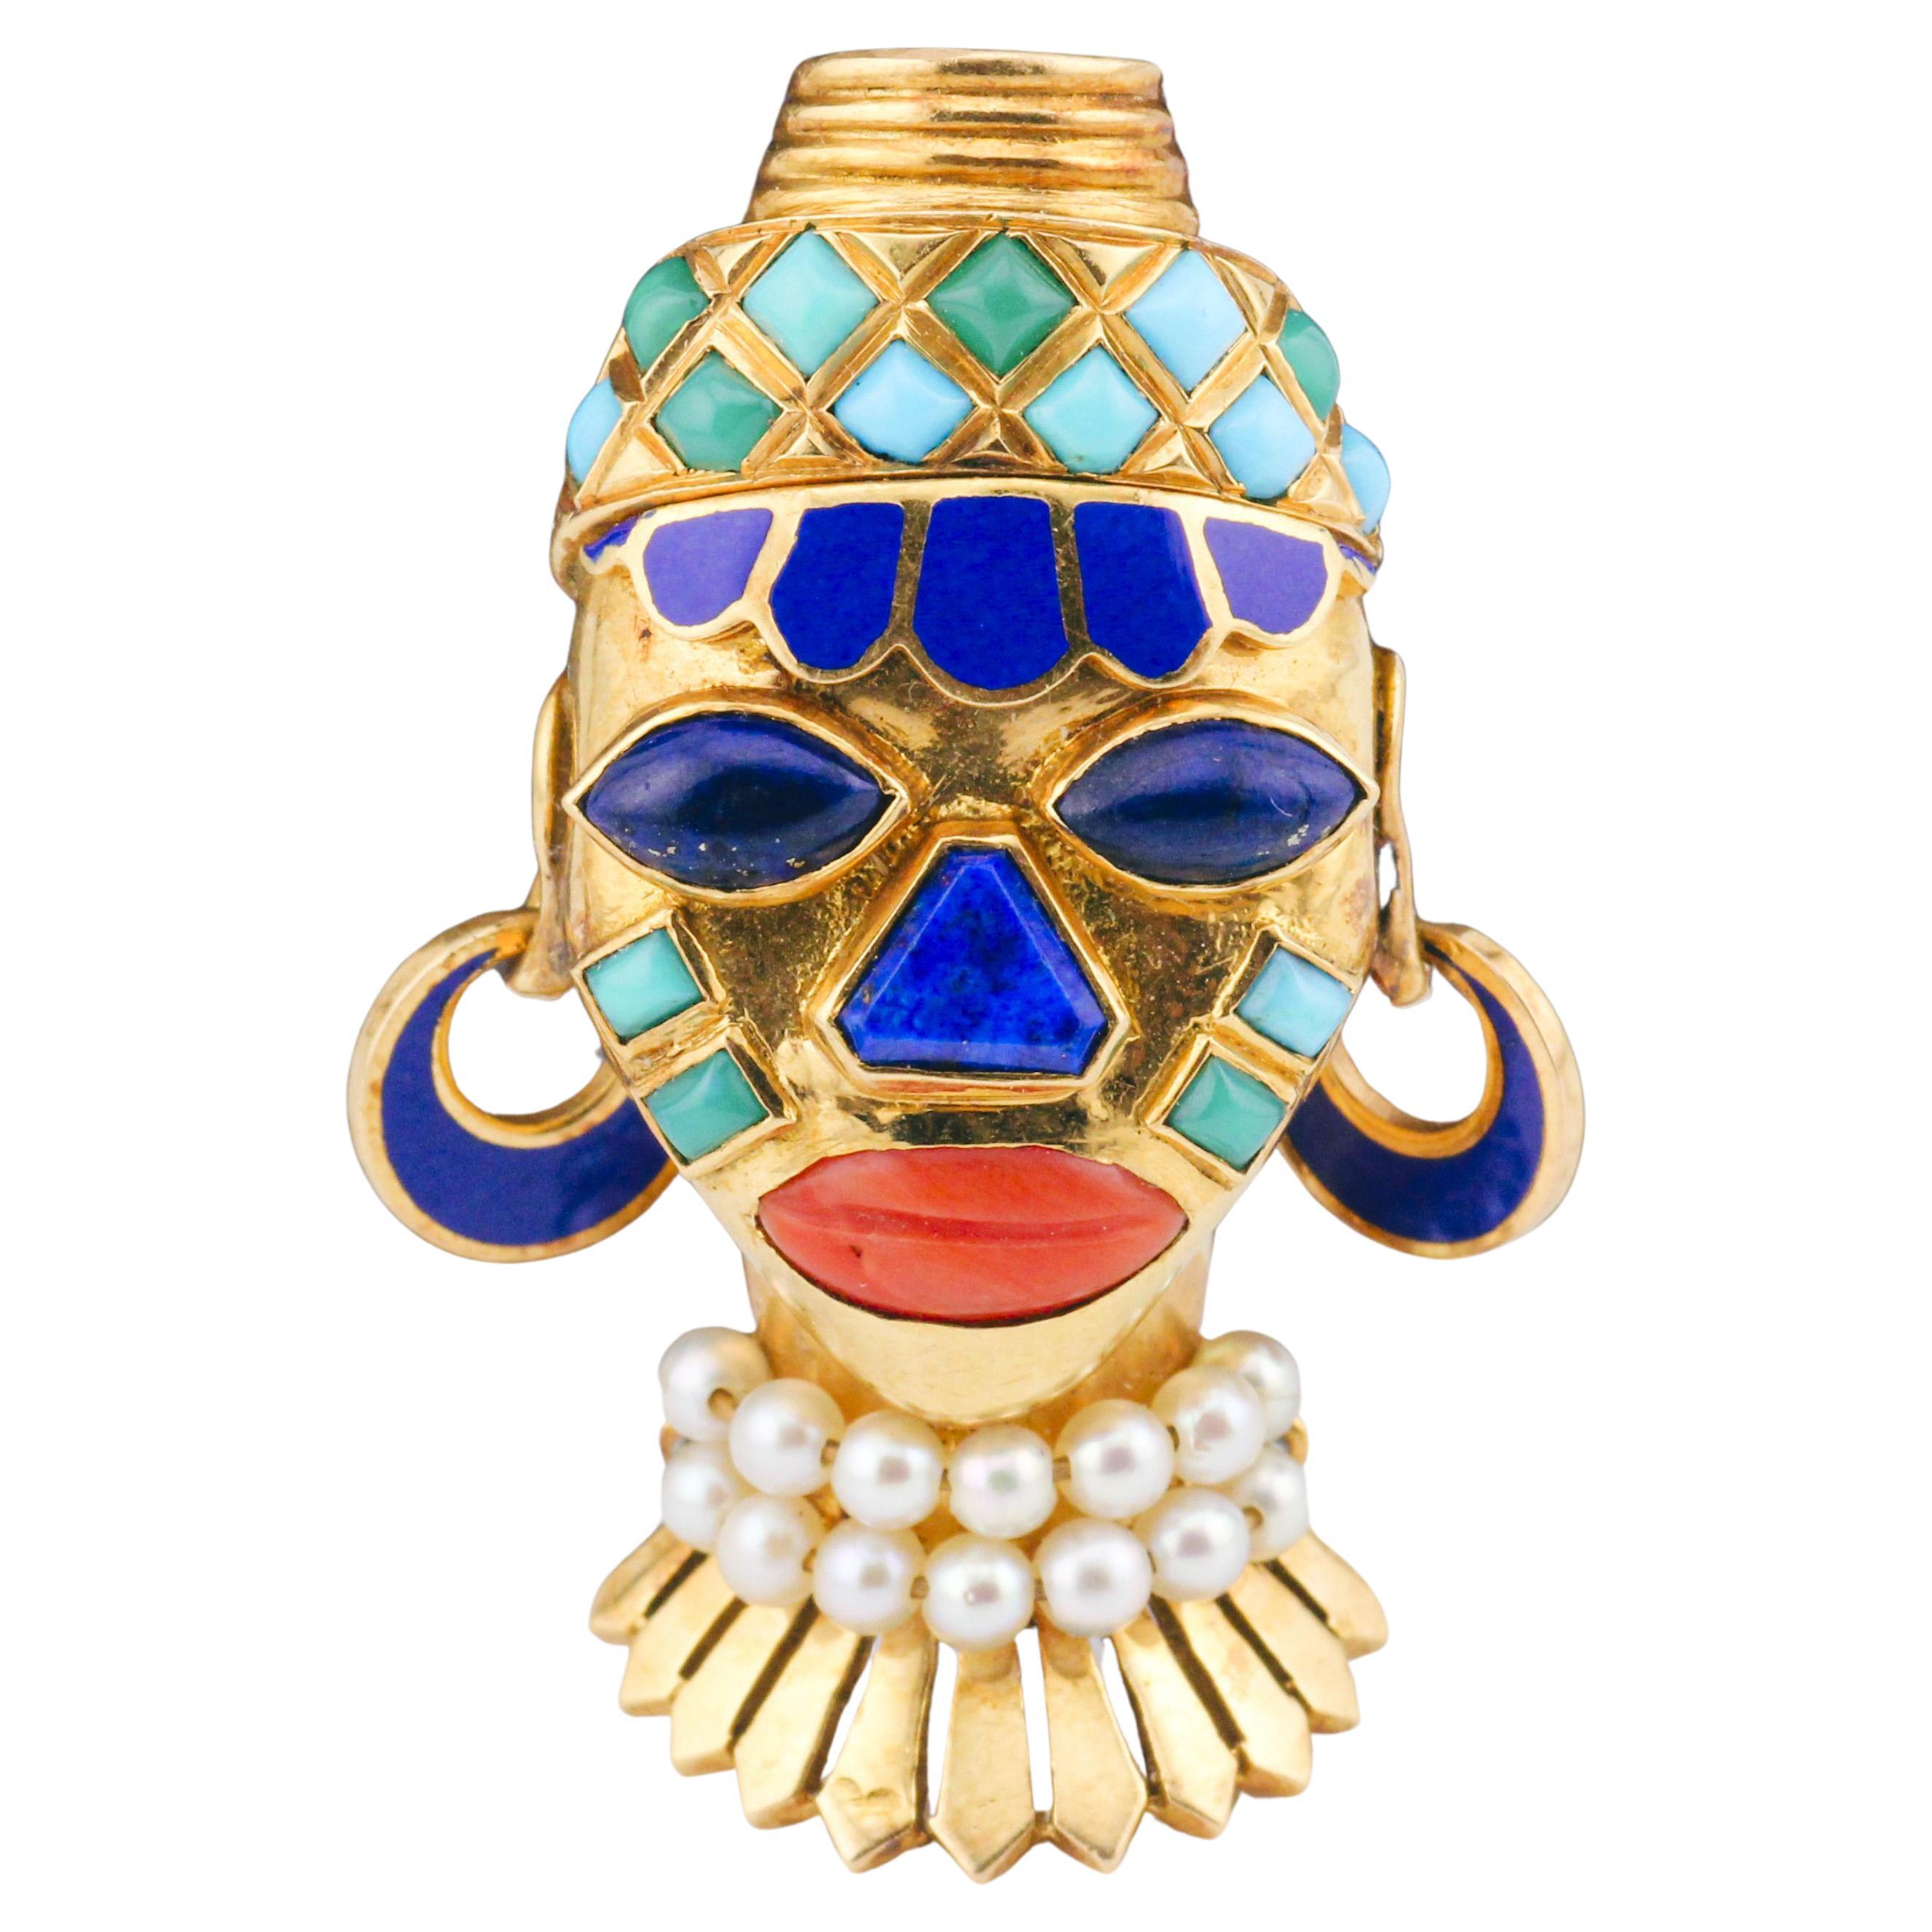 Broche masque africain de l'époque rétro Boucheron en or 18 carats, émaillée de lapis, turquoises et perles